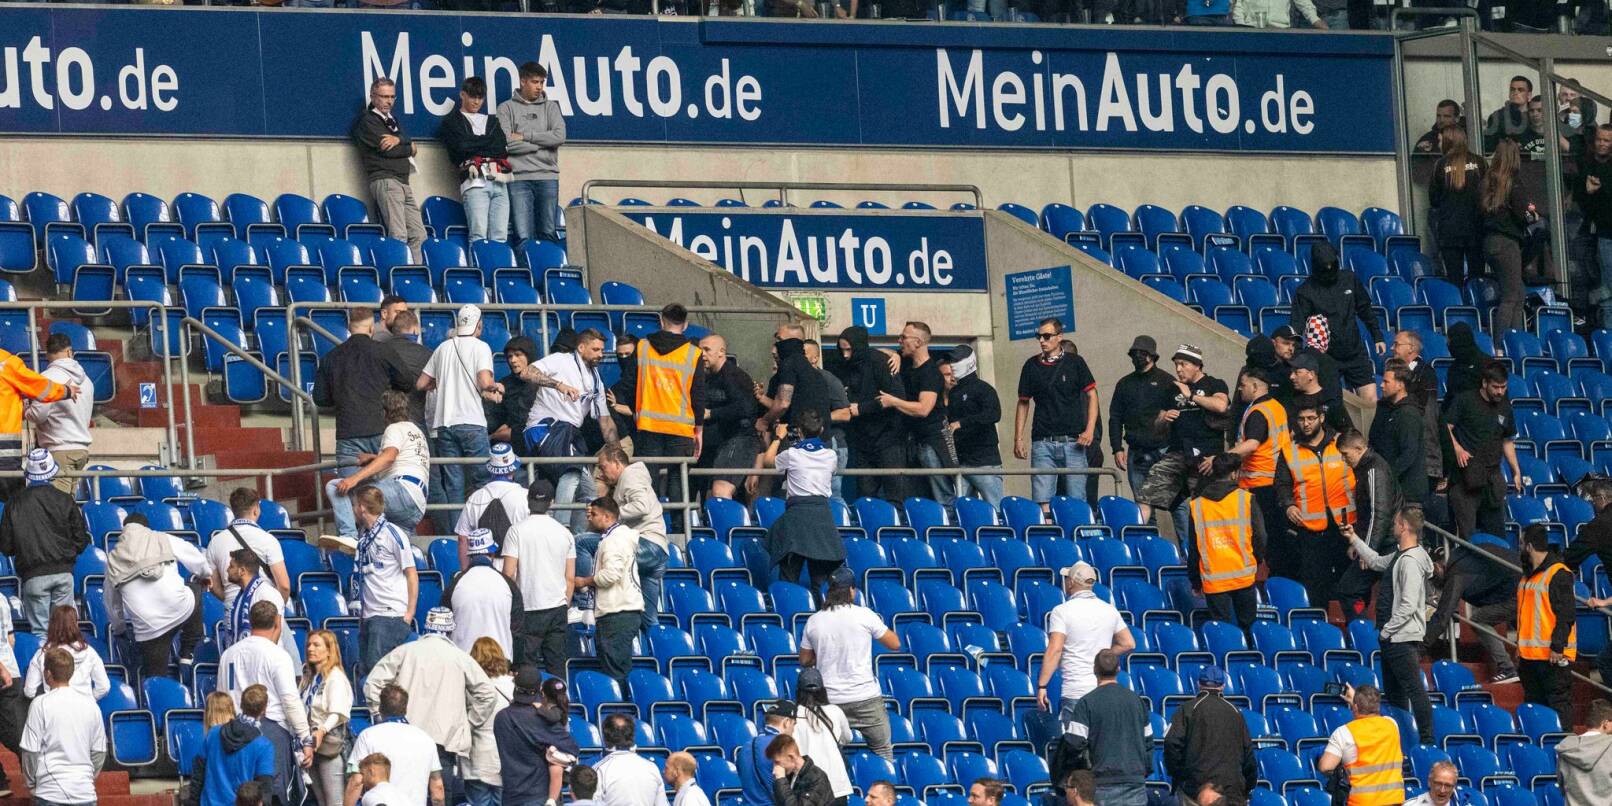 Schalker (weiße Shirts) und Frankfurter Fans prügeln sich nach dem Spiel auf der Tribüne.